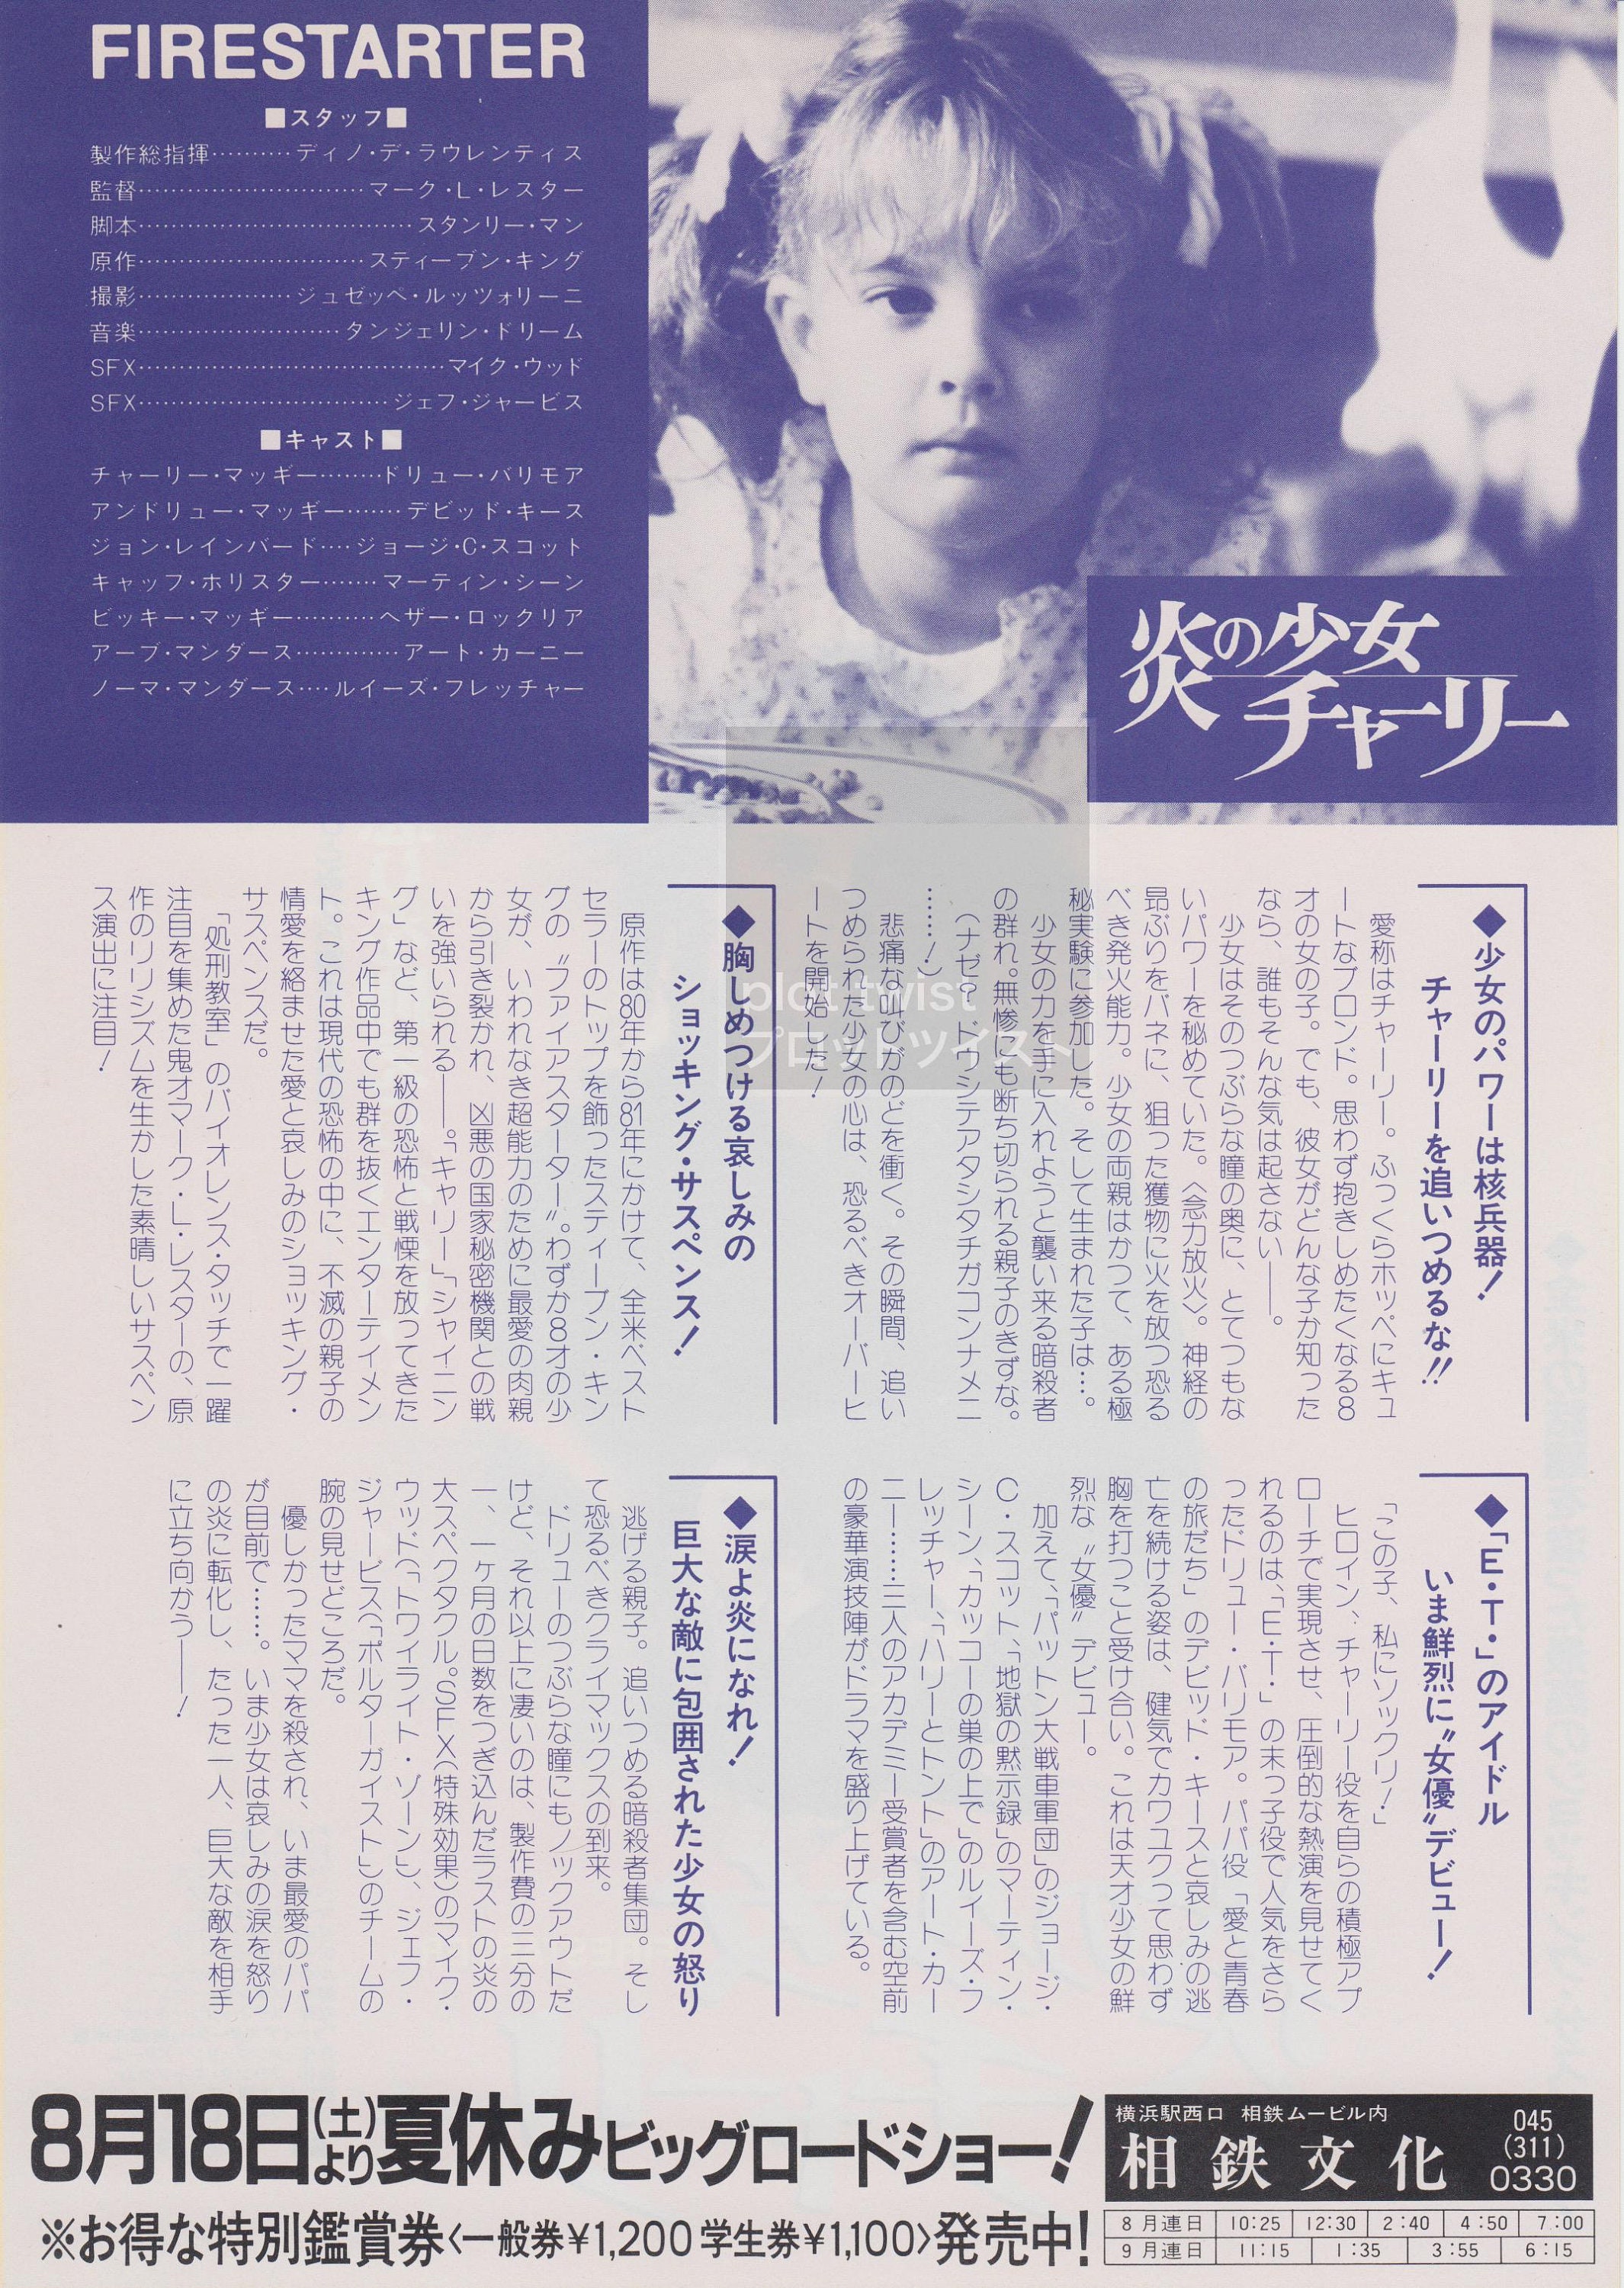 Vintage Firestarter 1984 Japanese Mini Movie Poster Etsy